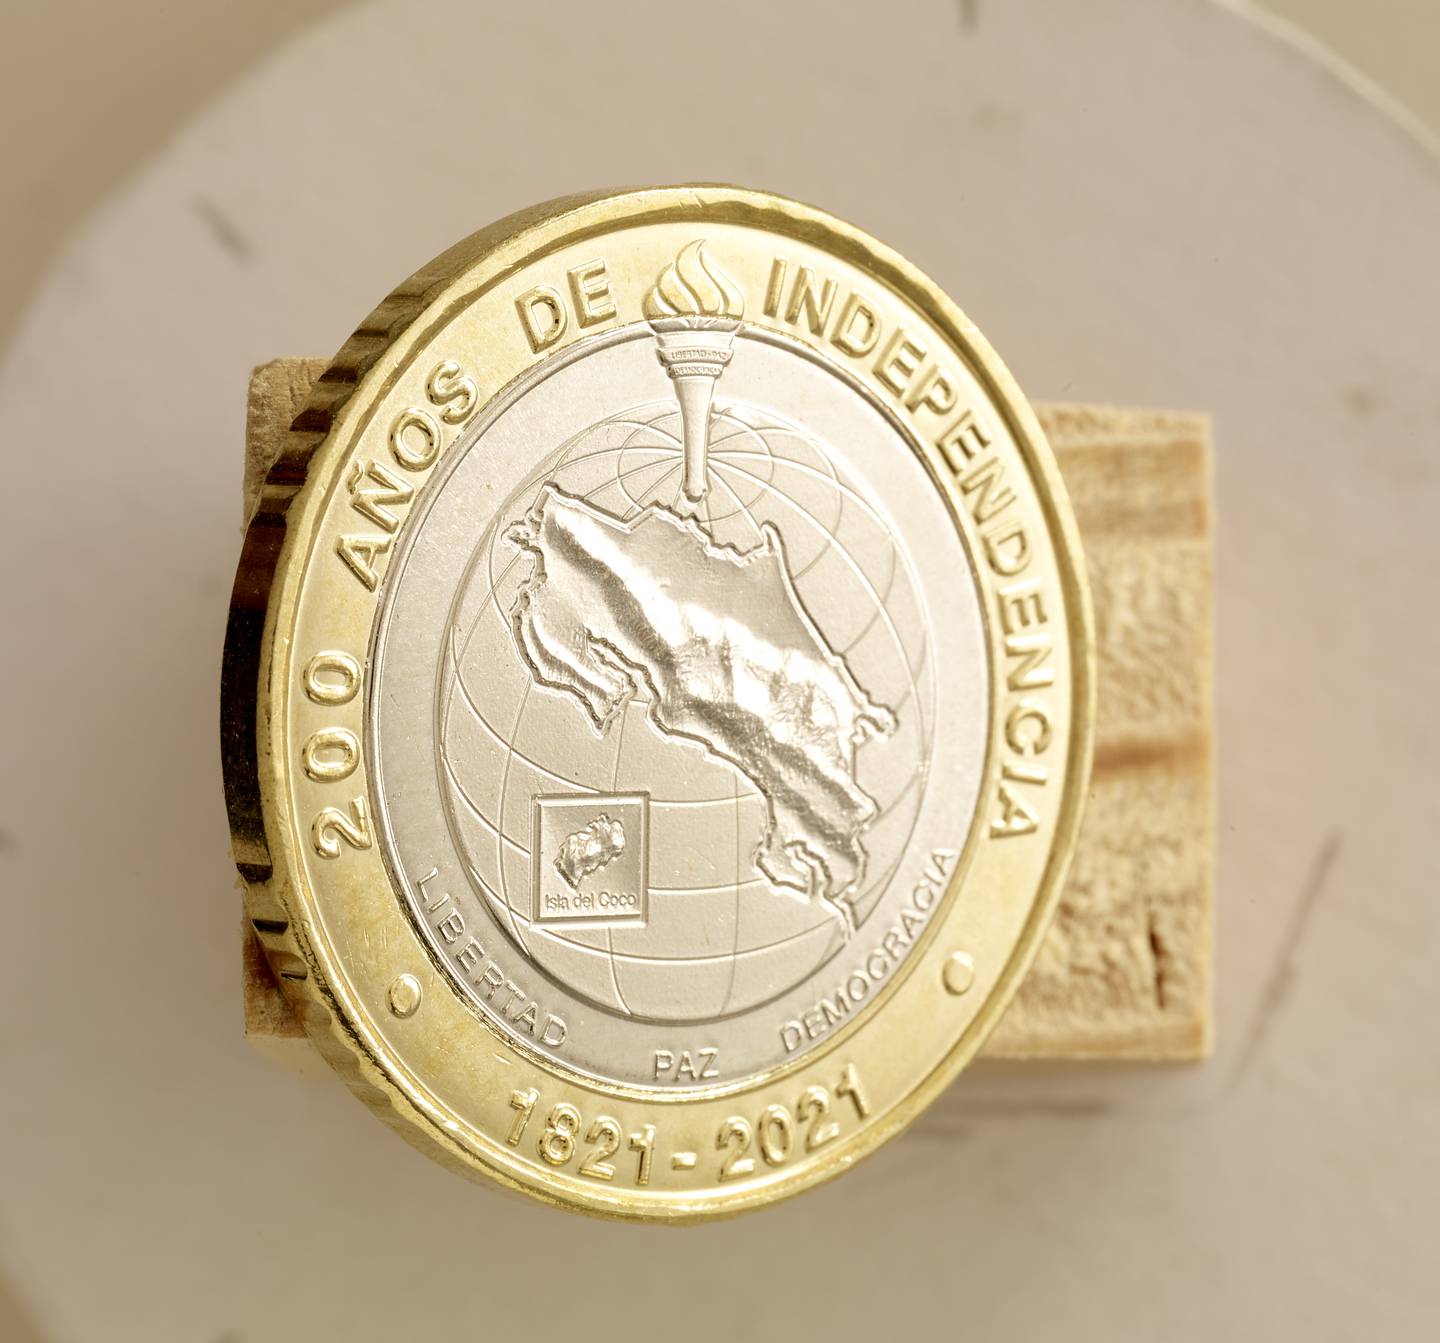 El diseñador gráfico costarricense, José María Castro Madriz, primo quinto del expresidente José María Castro Madriz, realizó el diseño de la moneda de 500 colones conmemorativa del bicentenario de la Independencia